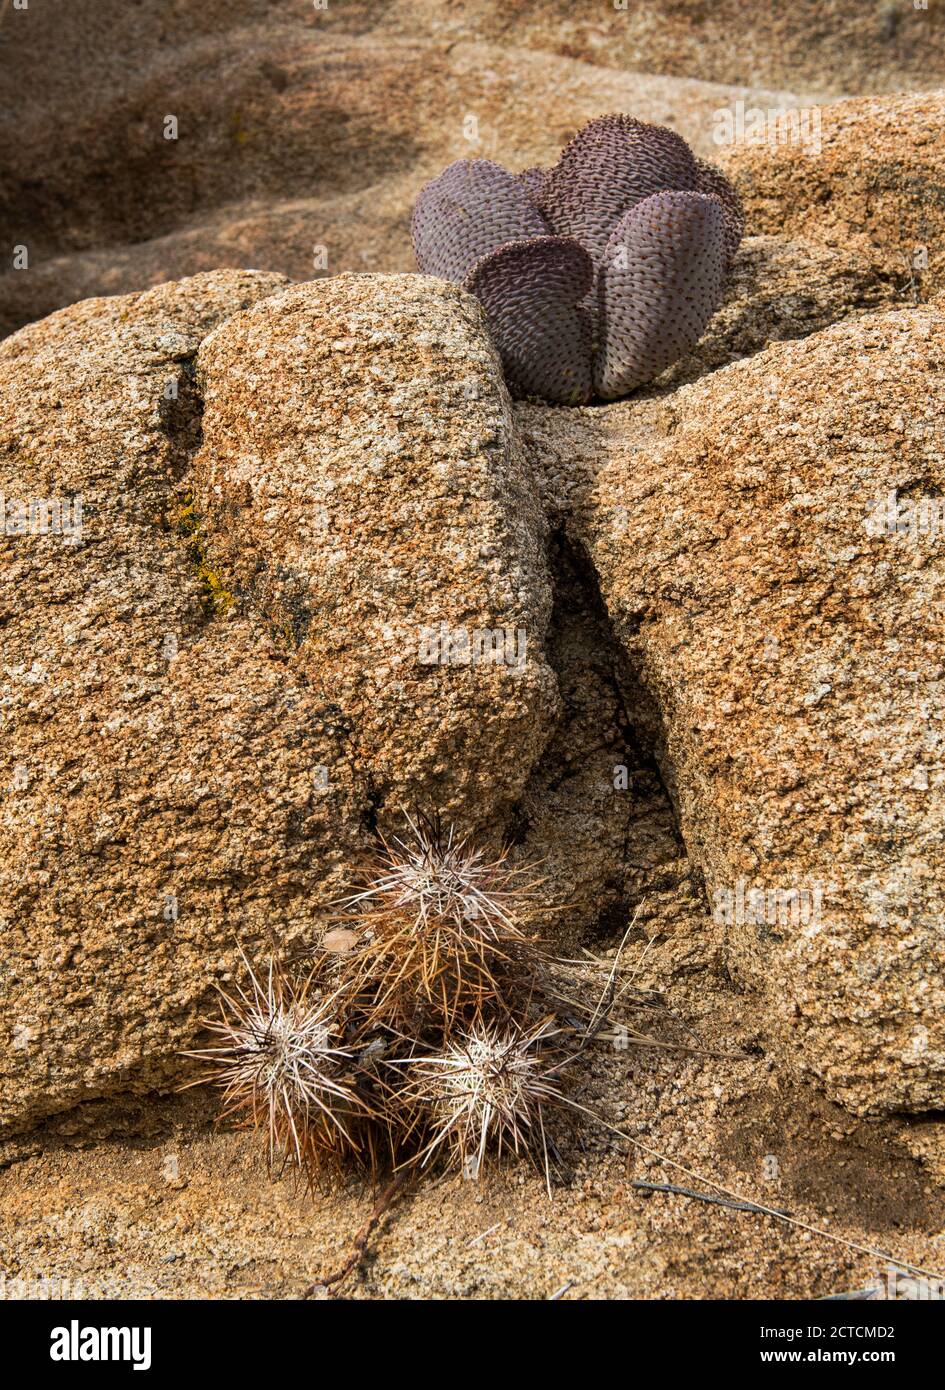 Life Among the Rocks, Cactus Purple Prickly-Pear dans le parc national de Joshua Tree, Californie Banque D'Images